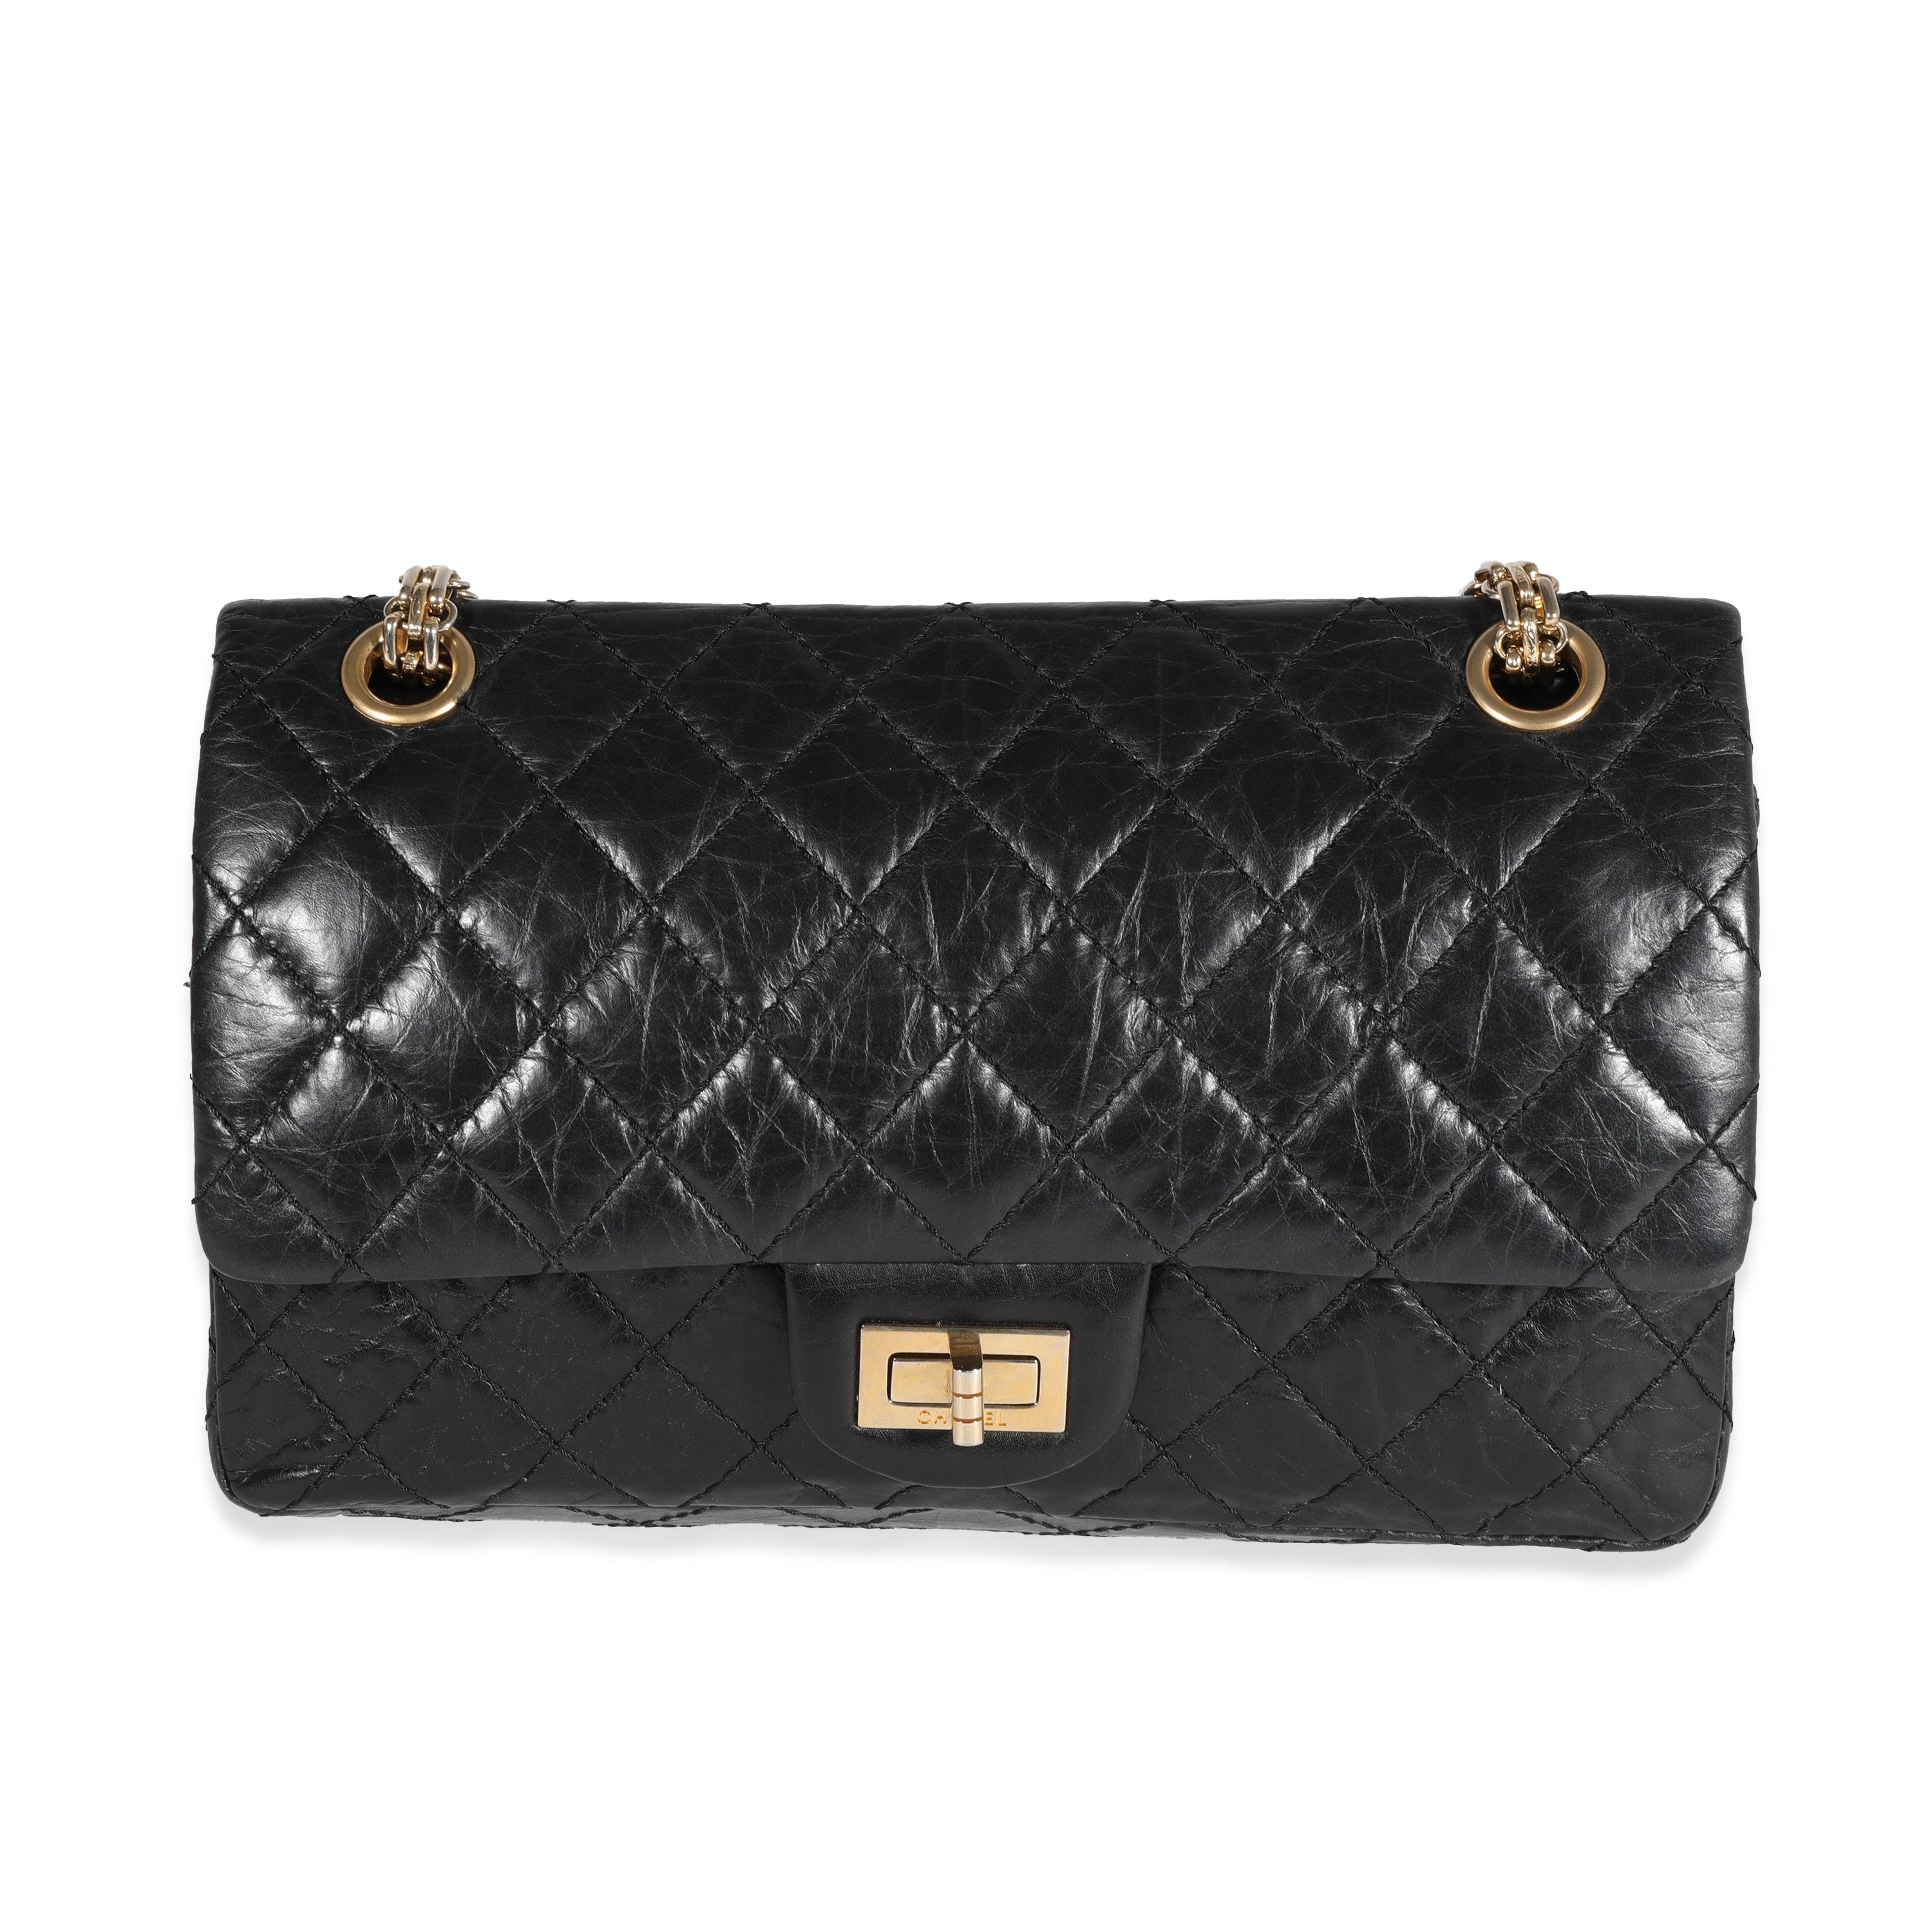 Chanel Pre-owned 2005-2006 2.55 Shoulder Bag